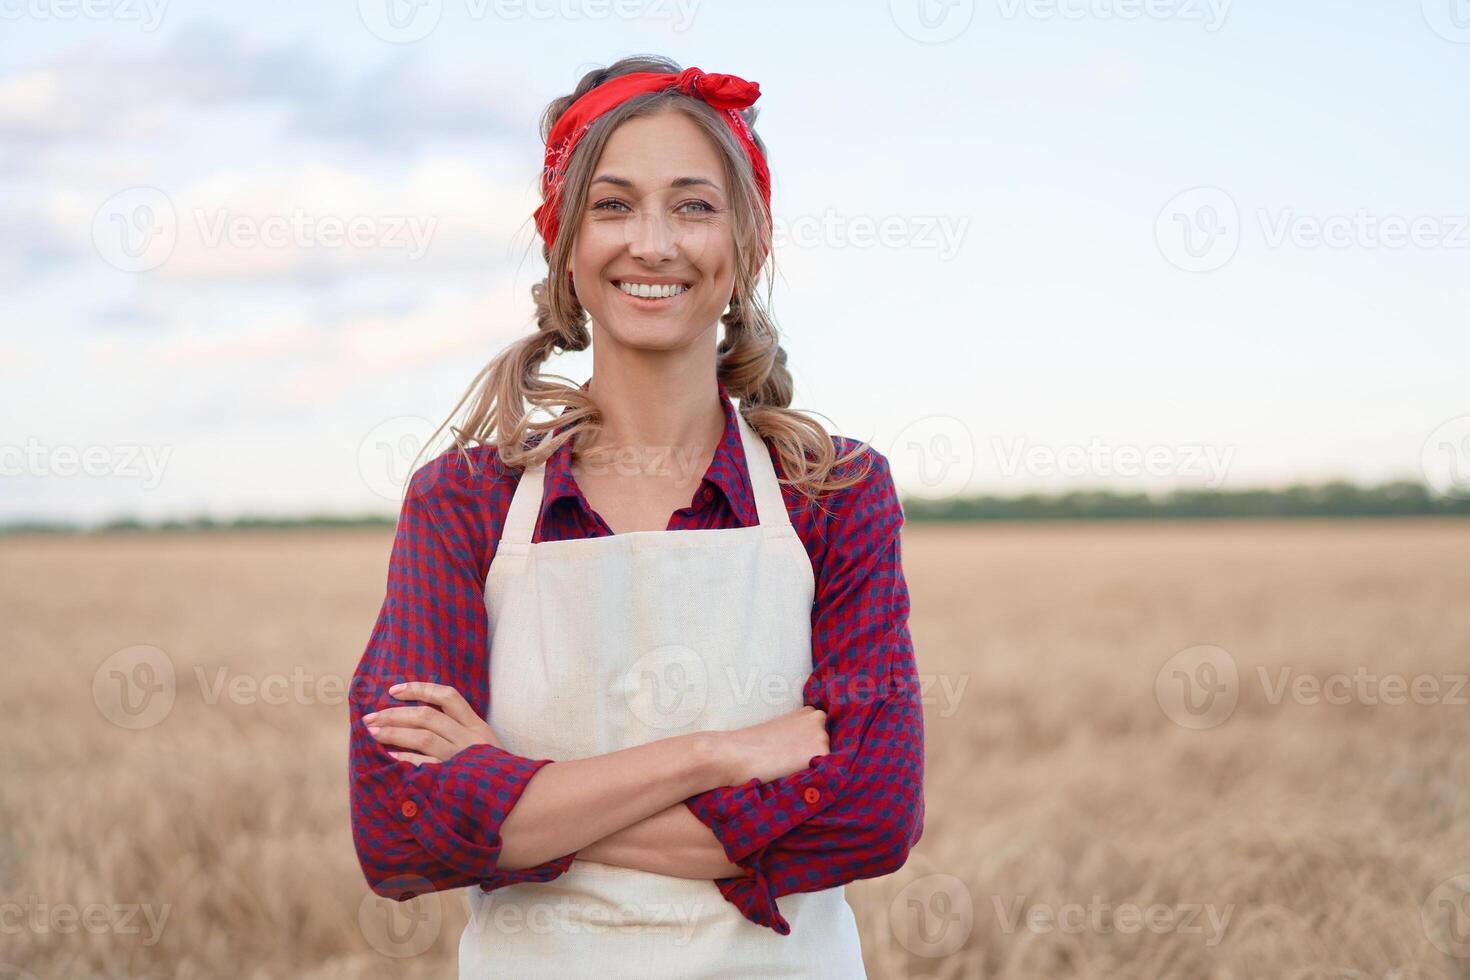 vrouw boer staand bouwland glimlachen vrouw agronoom specialist landbouw agribusiness gelukkig positief Kaukasisch arbeider agrarisch veld- foto